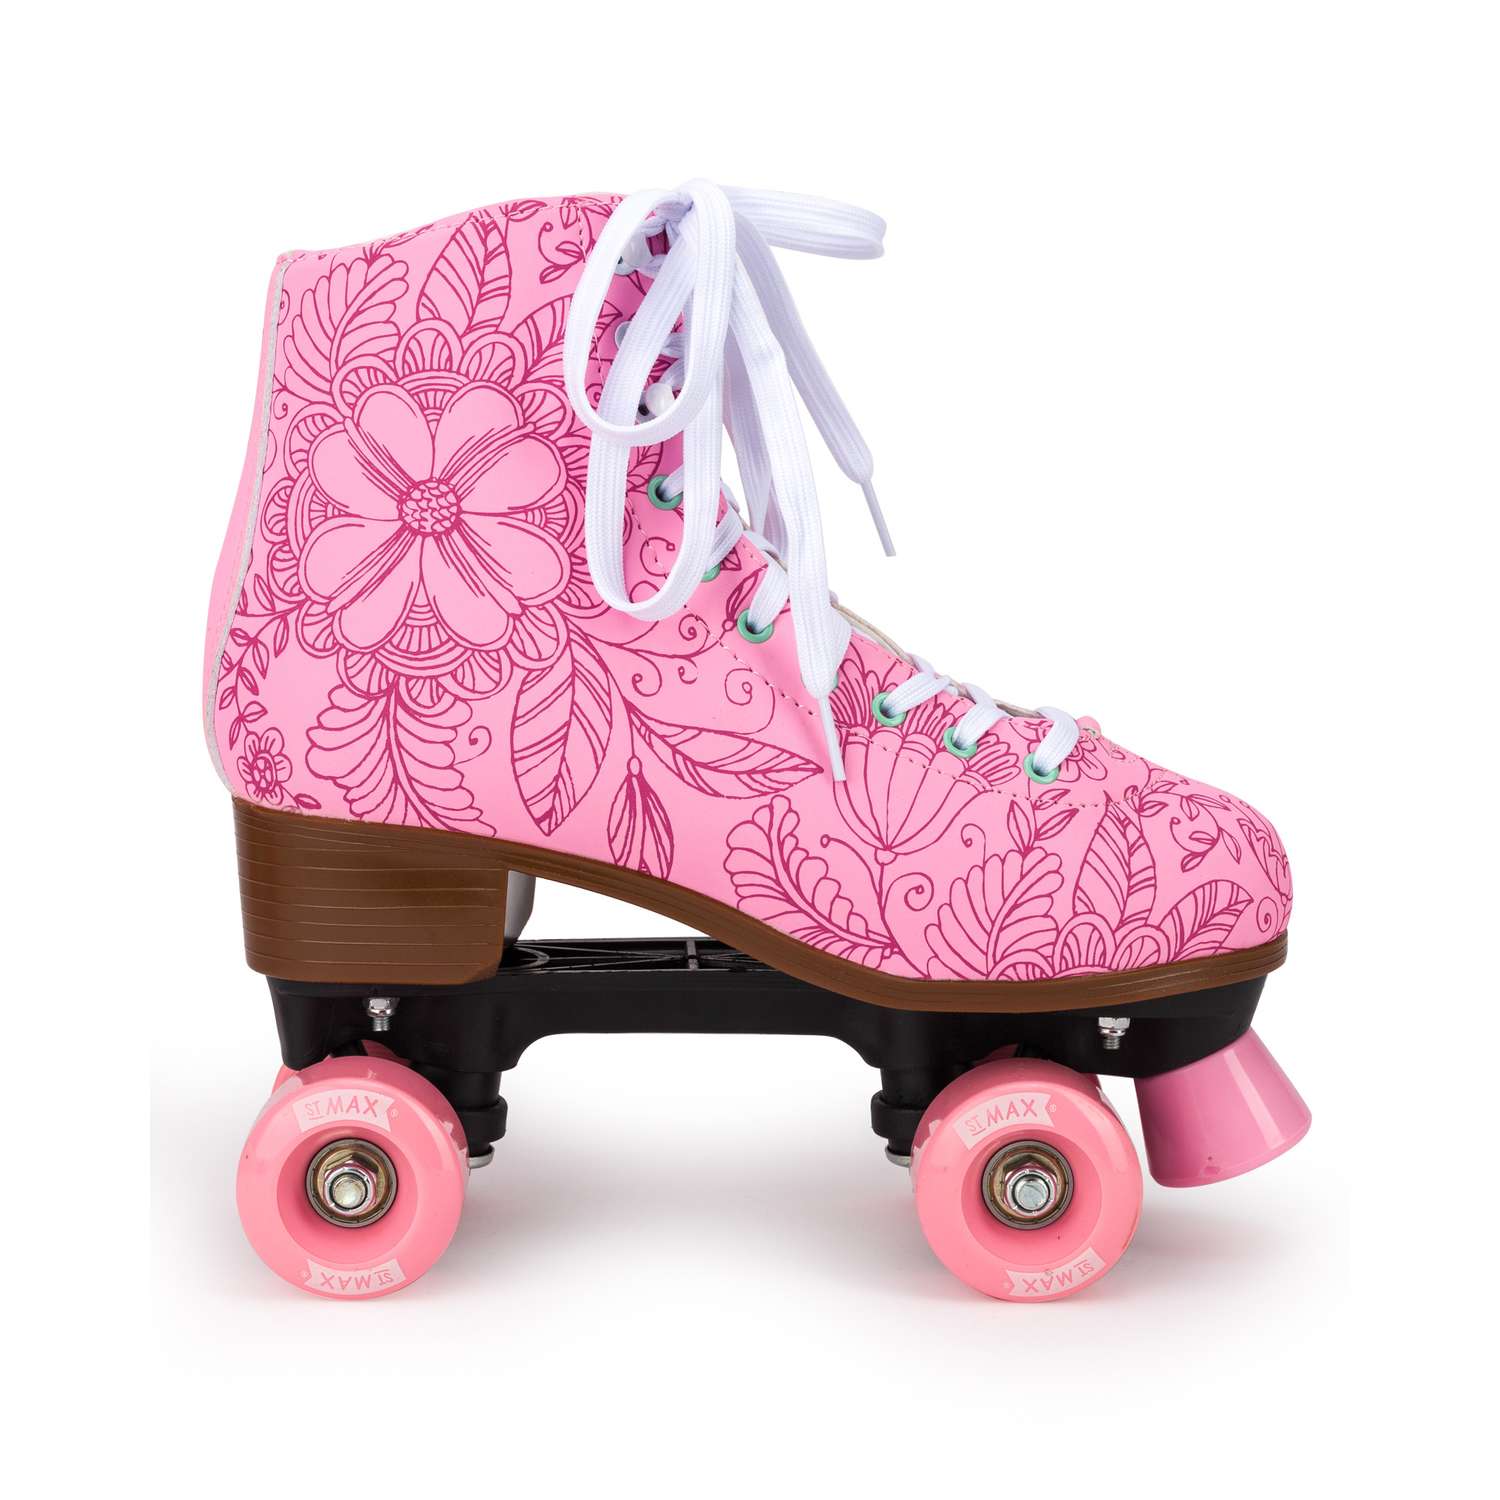 Роликовые коньки SXRide Roller skate YXSKT04PNFL36 цвет розовые с цветочками размер 36 - фото 2